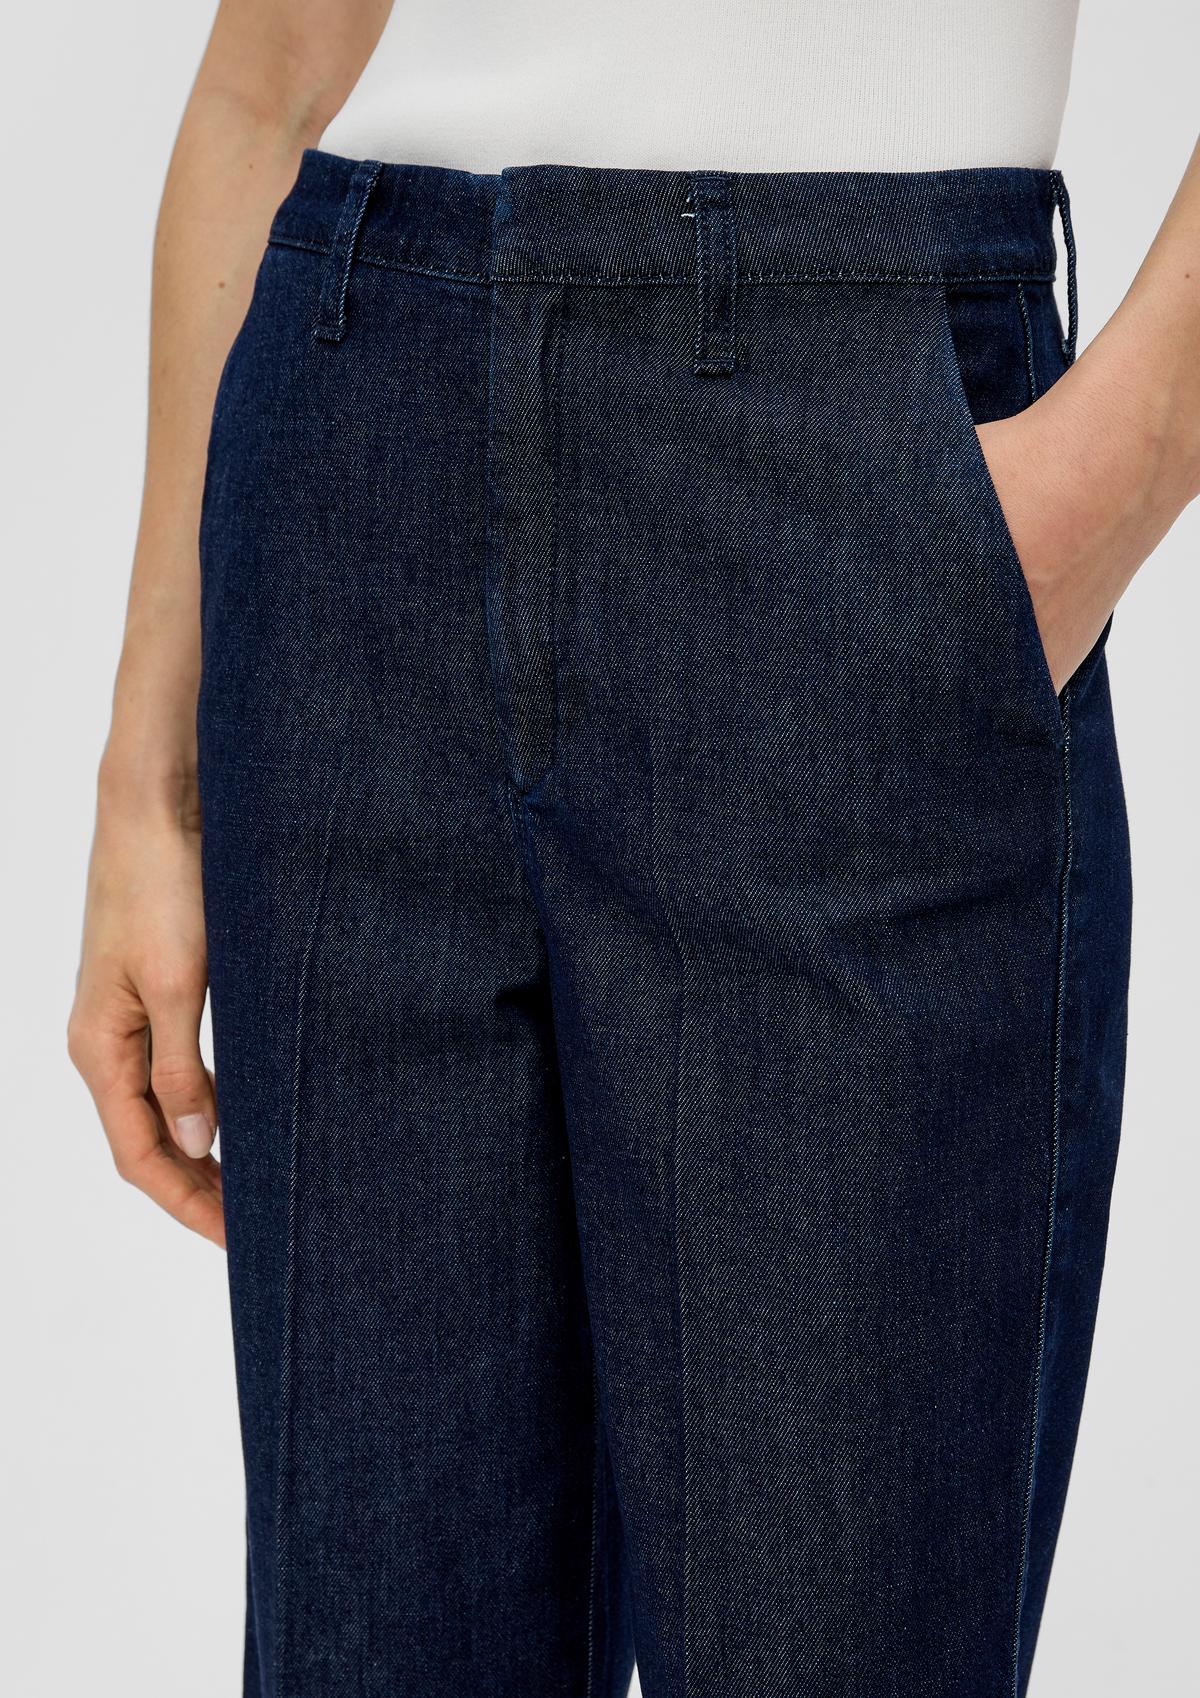 s.Oliver Jeans hlače krajšega kroja / kroj Relaxed Fit / High Rise / široke hlačnice